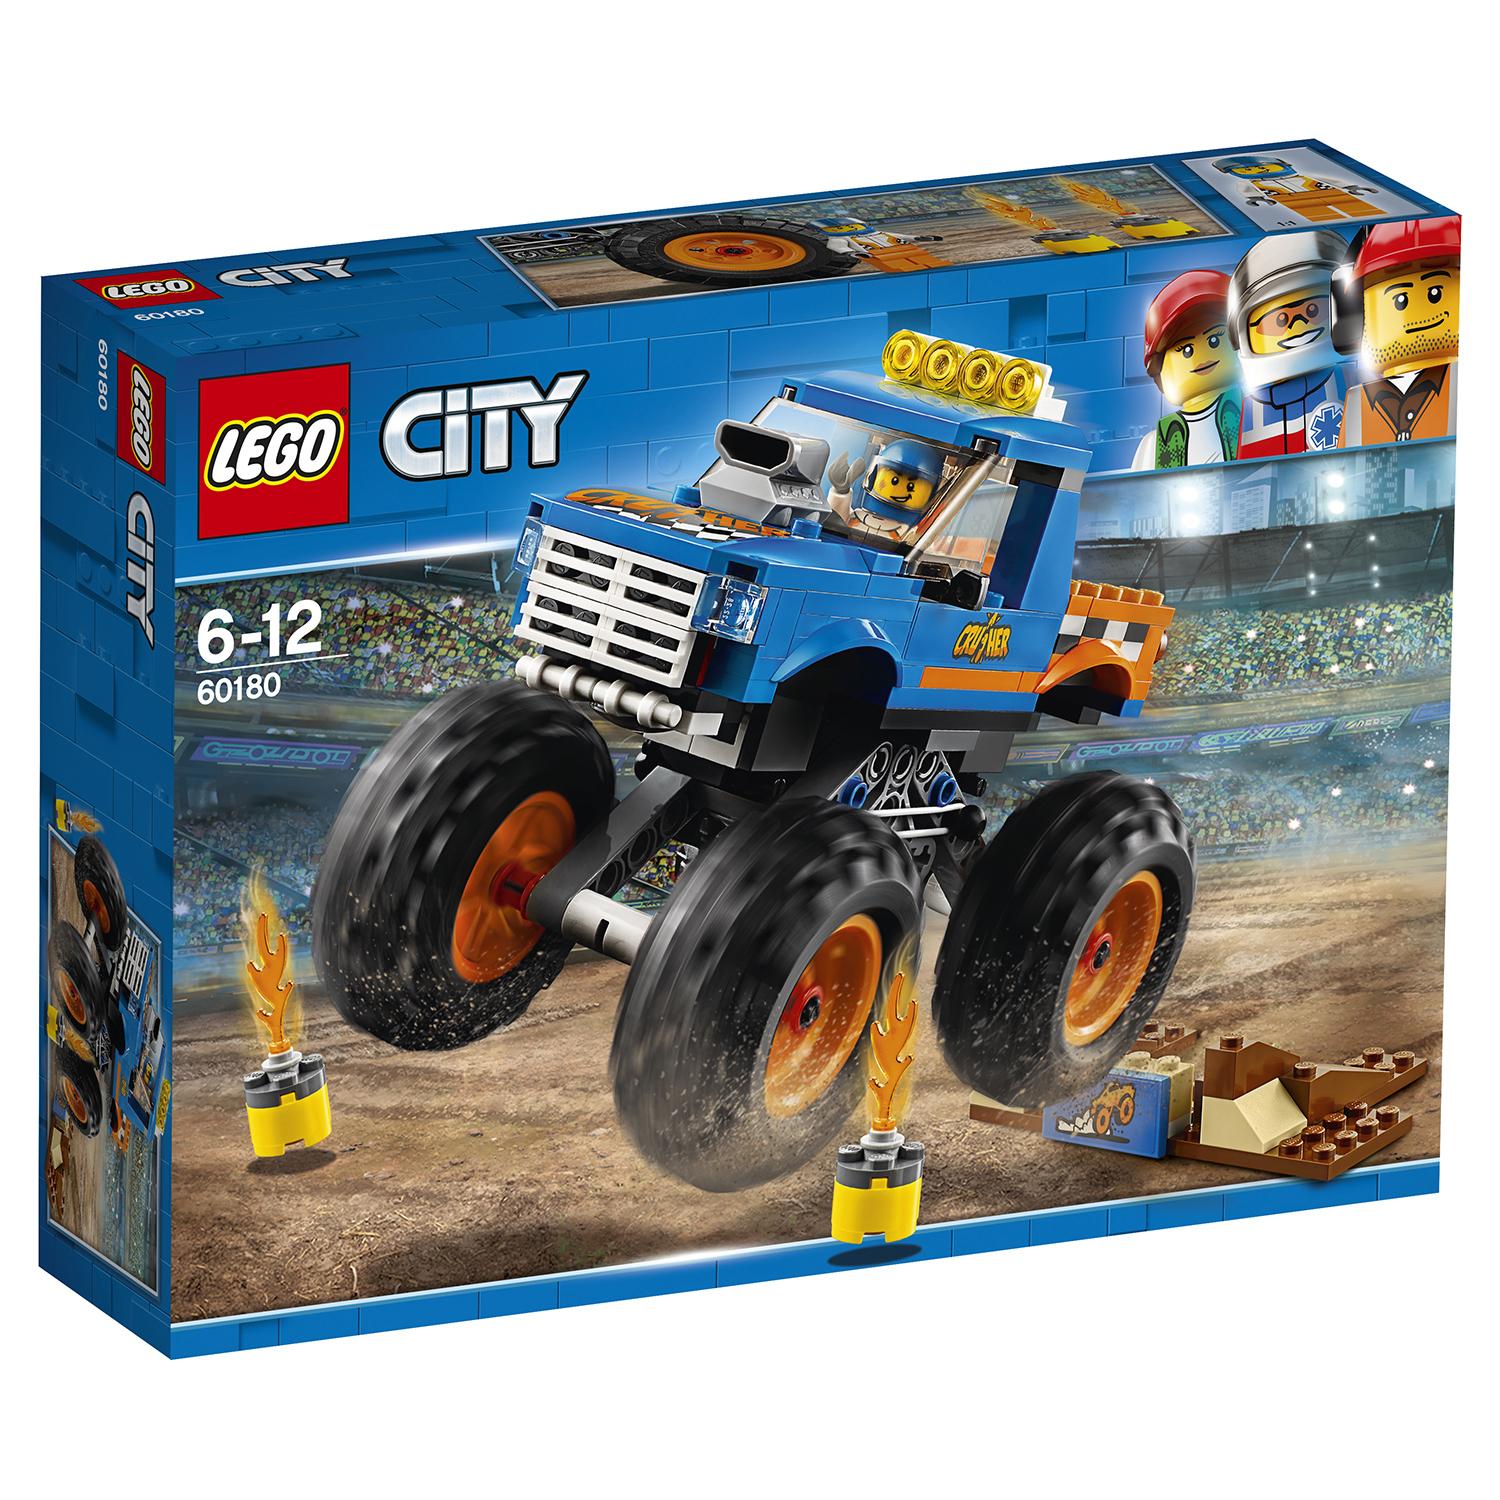 Lego City 60180 Монстр-трак